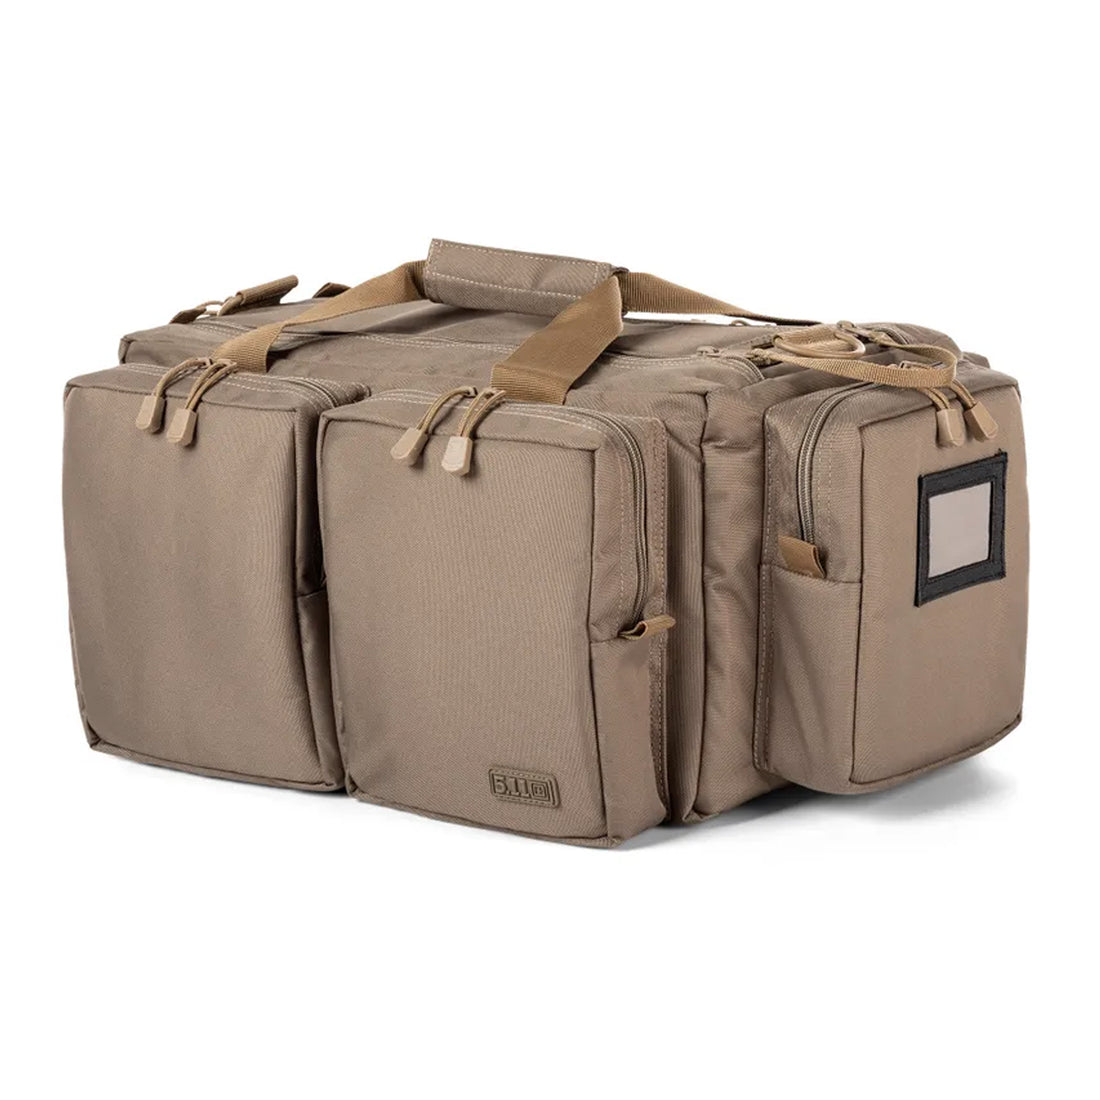 5.11 Tactical Range Ready Bag 43L sandstone